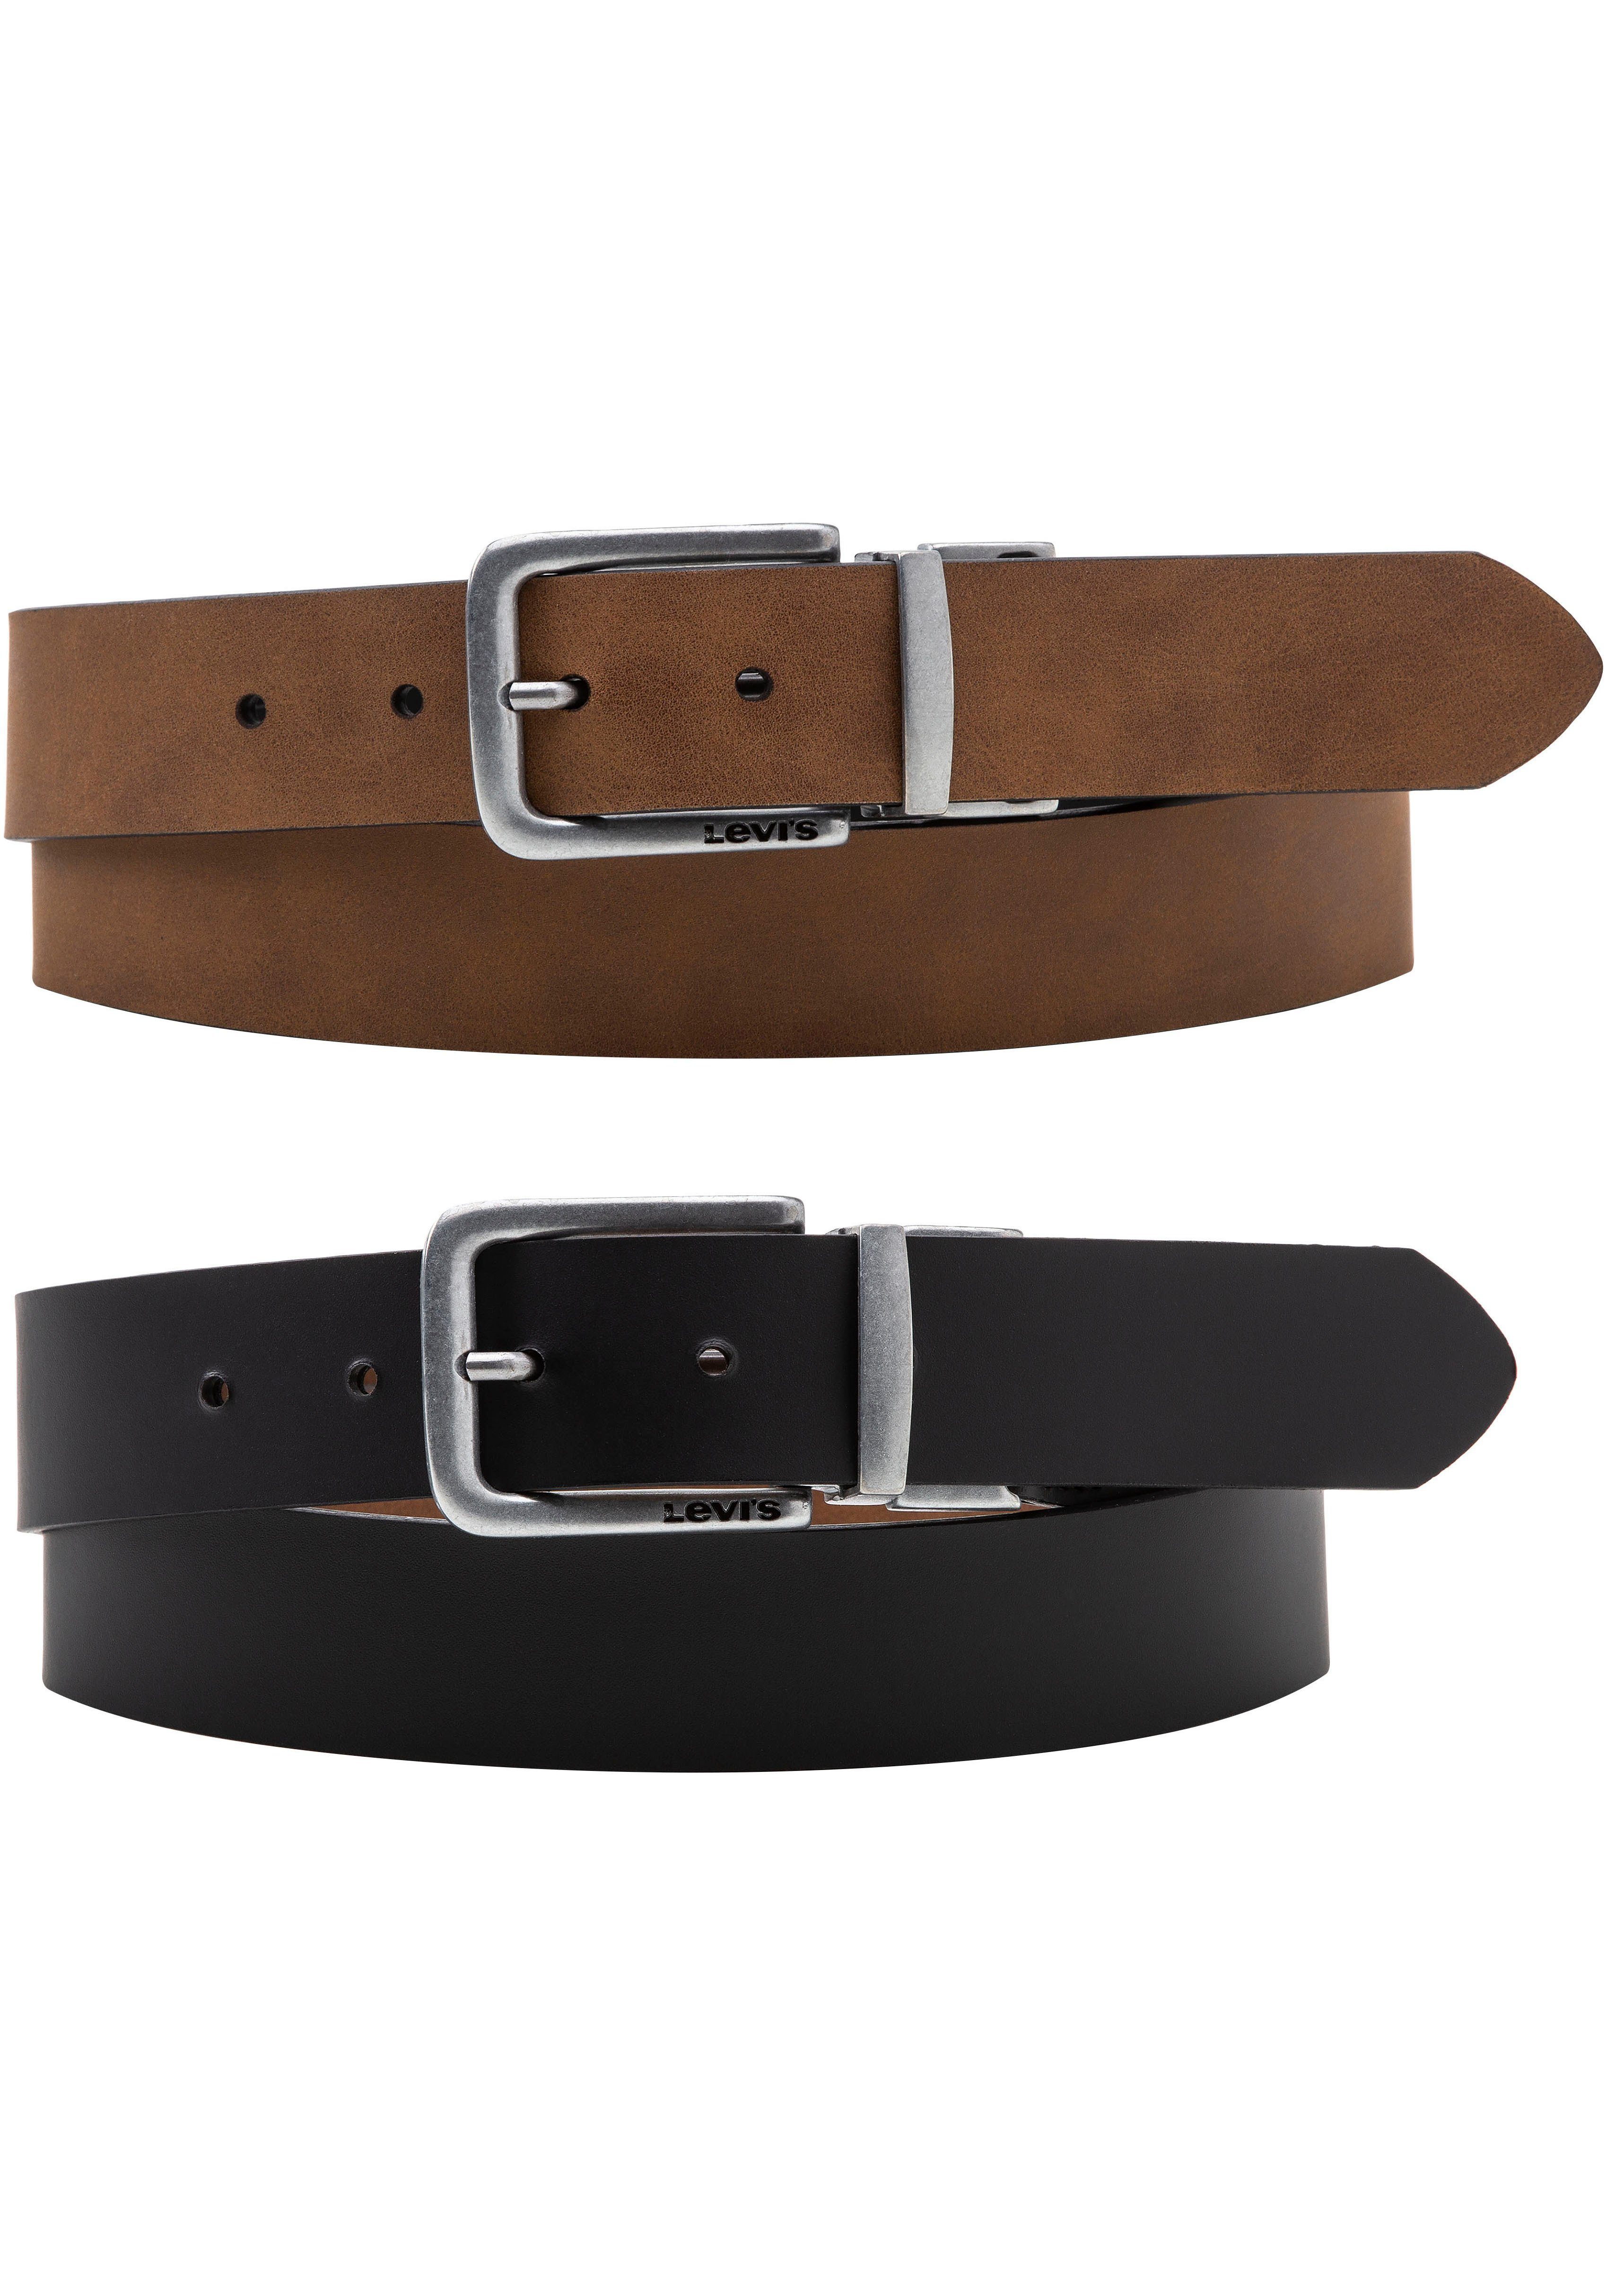 Levi's® Wendegürtel Reversible Classic Belt in zwei unterschiedlichen Farben tragbar | Wendegürtel